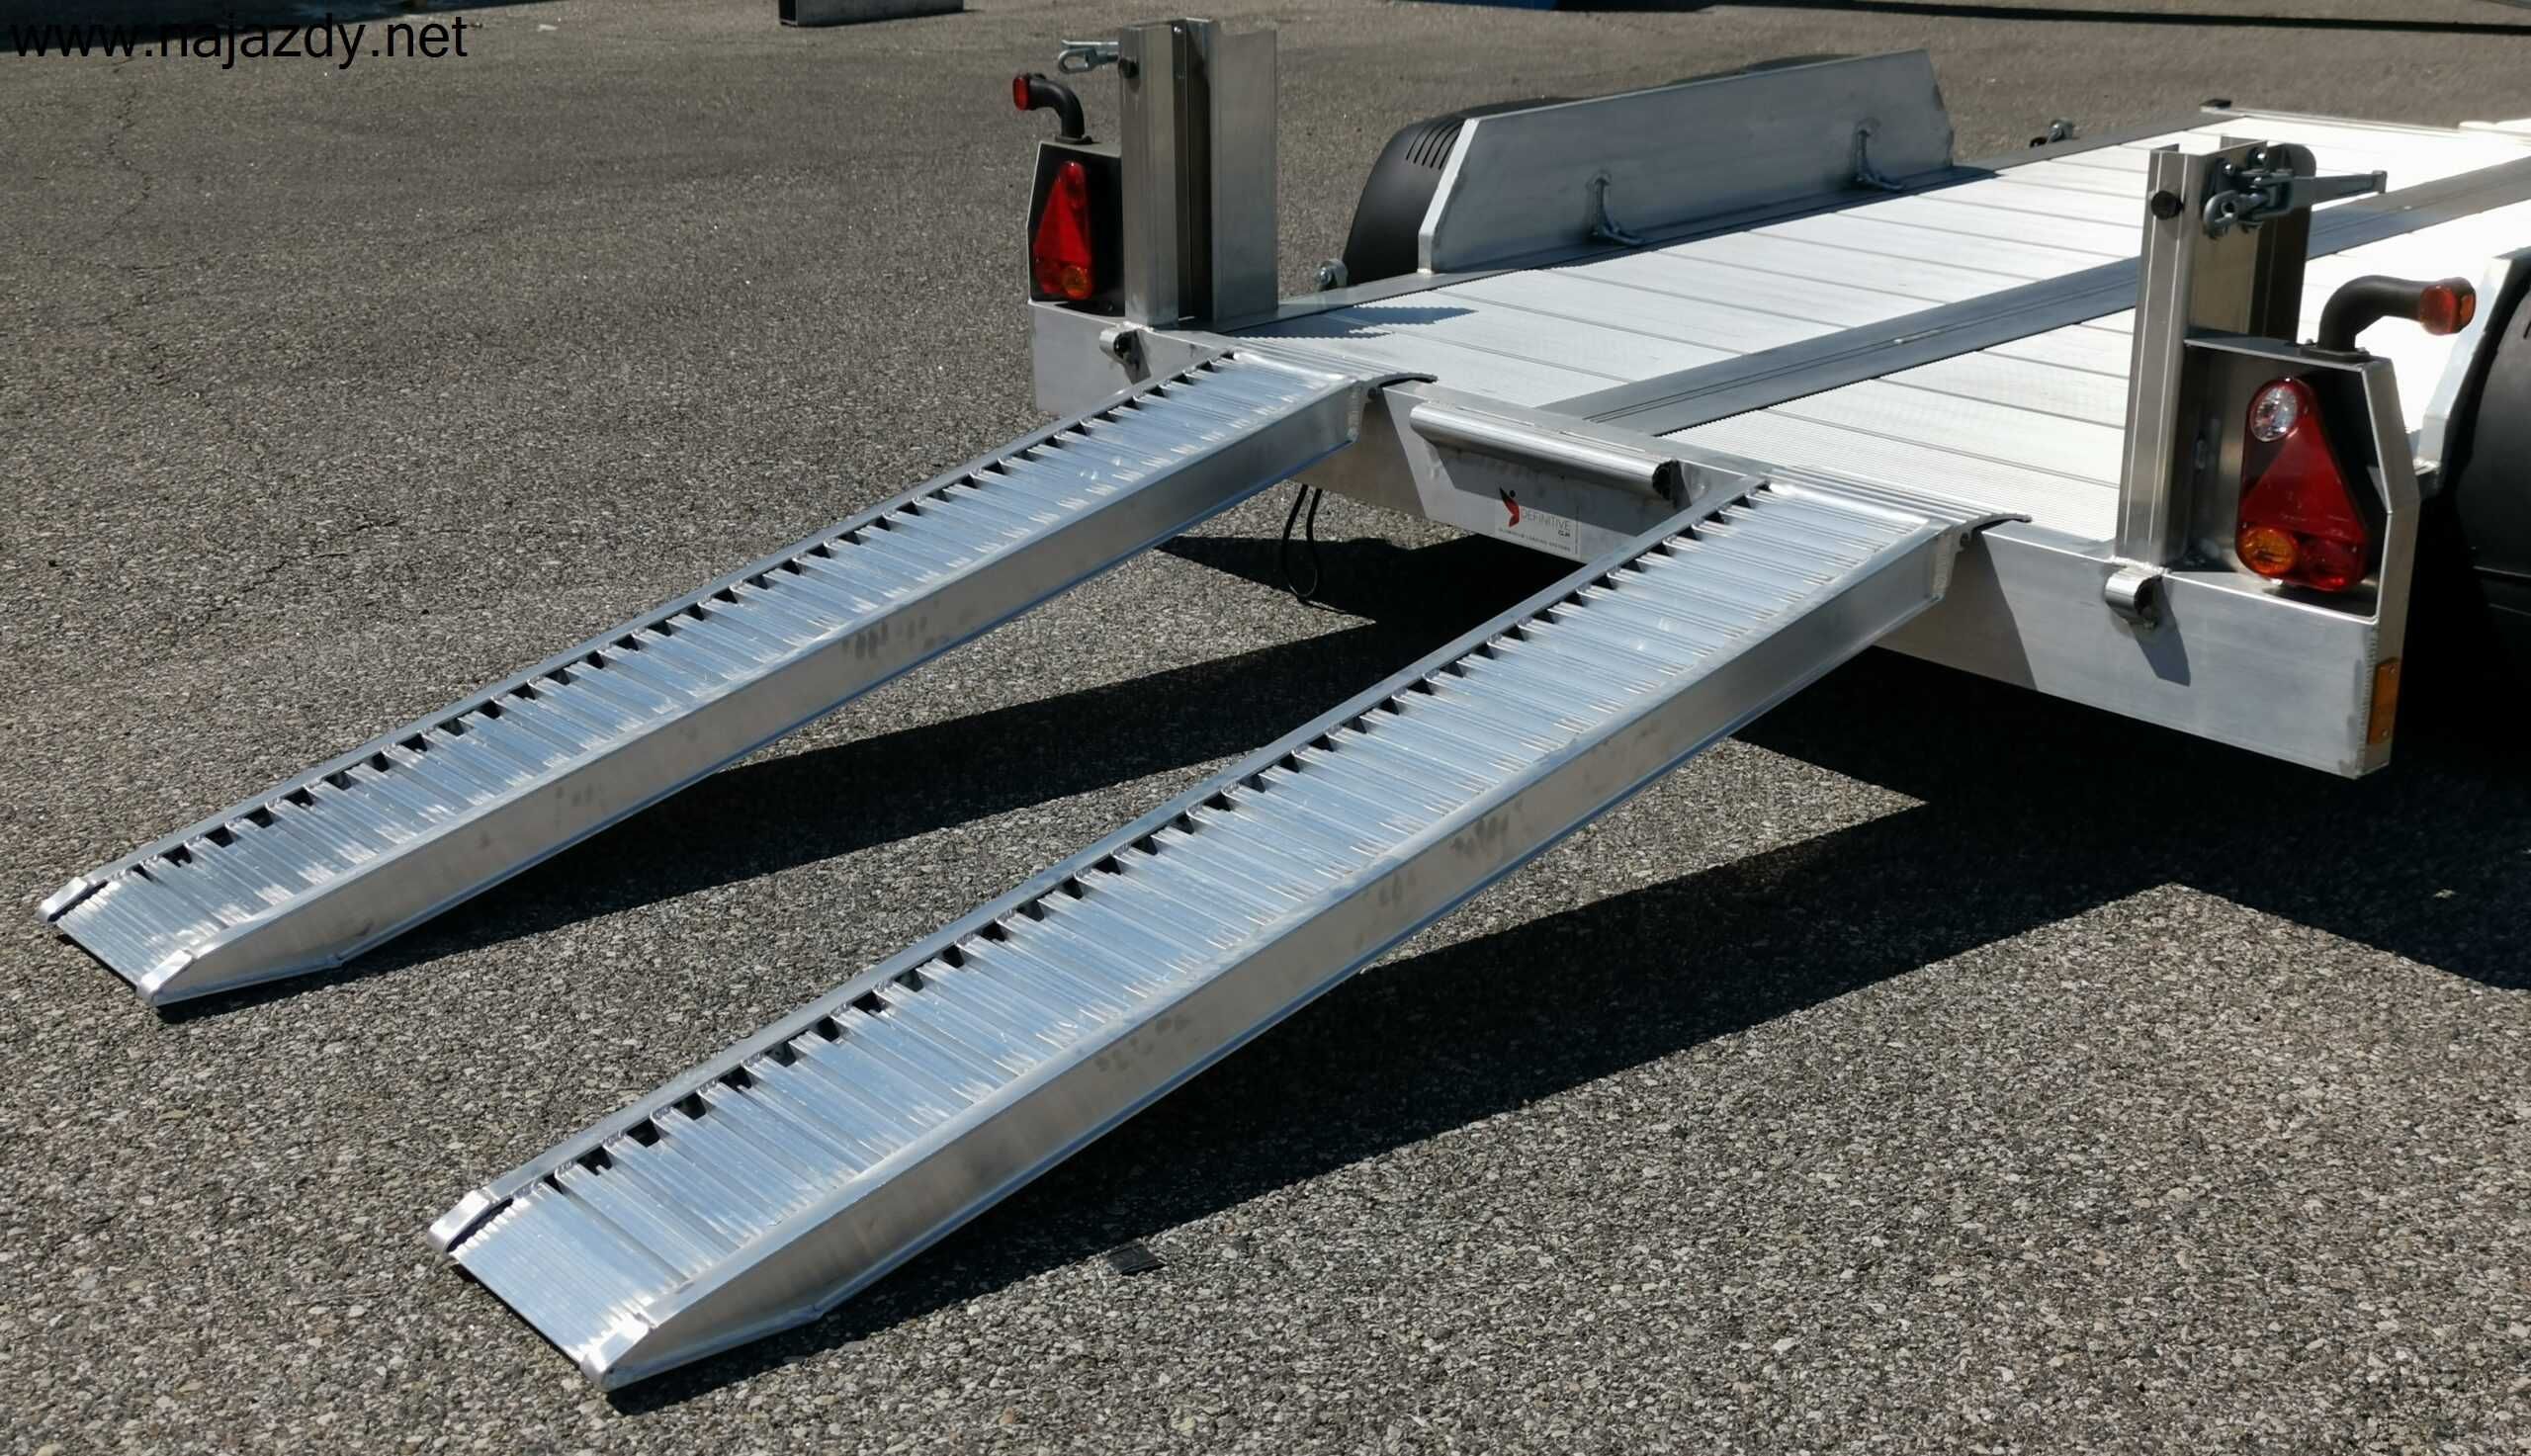 Najazdy Aluminiowe 3,5m 3800kg /Włoskie/dostępne od ręki